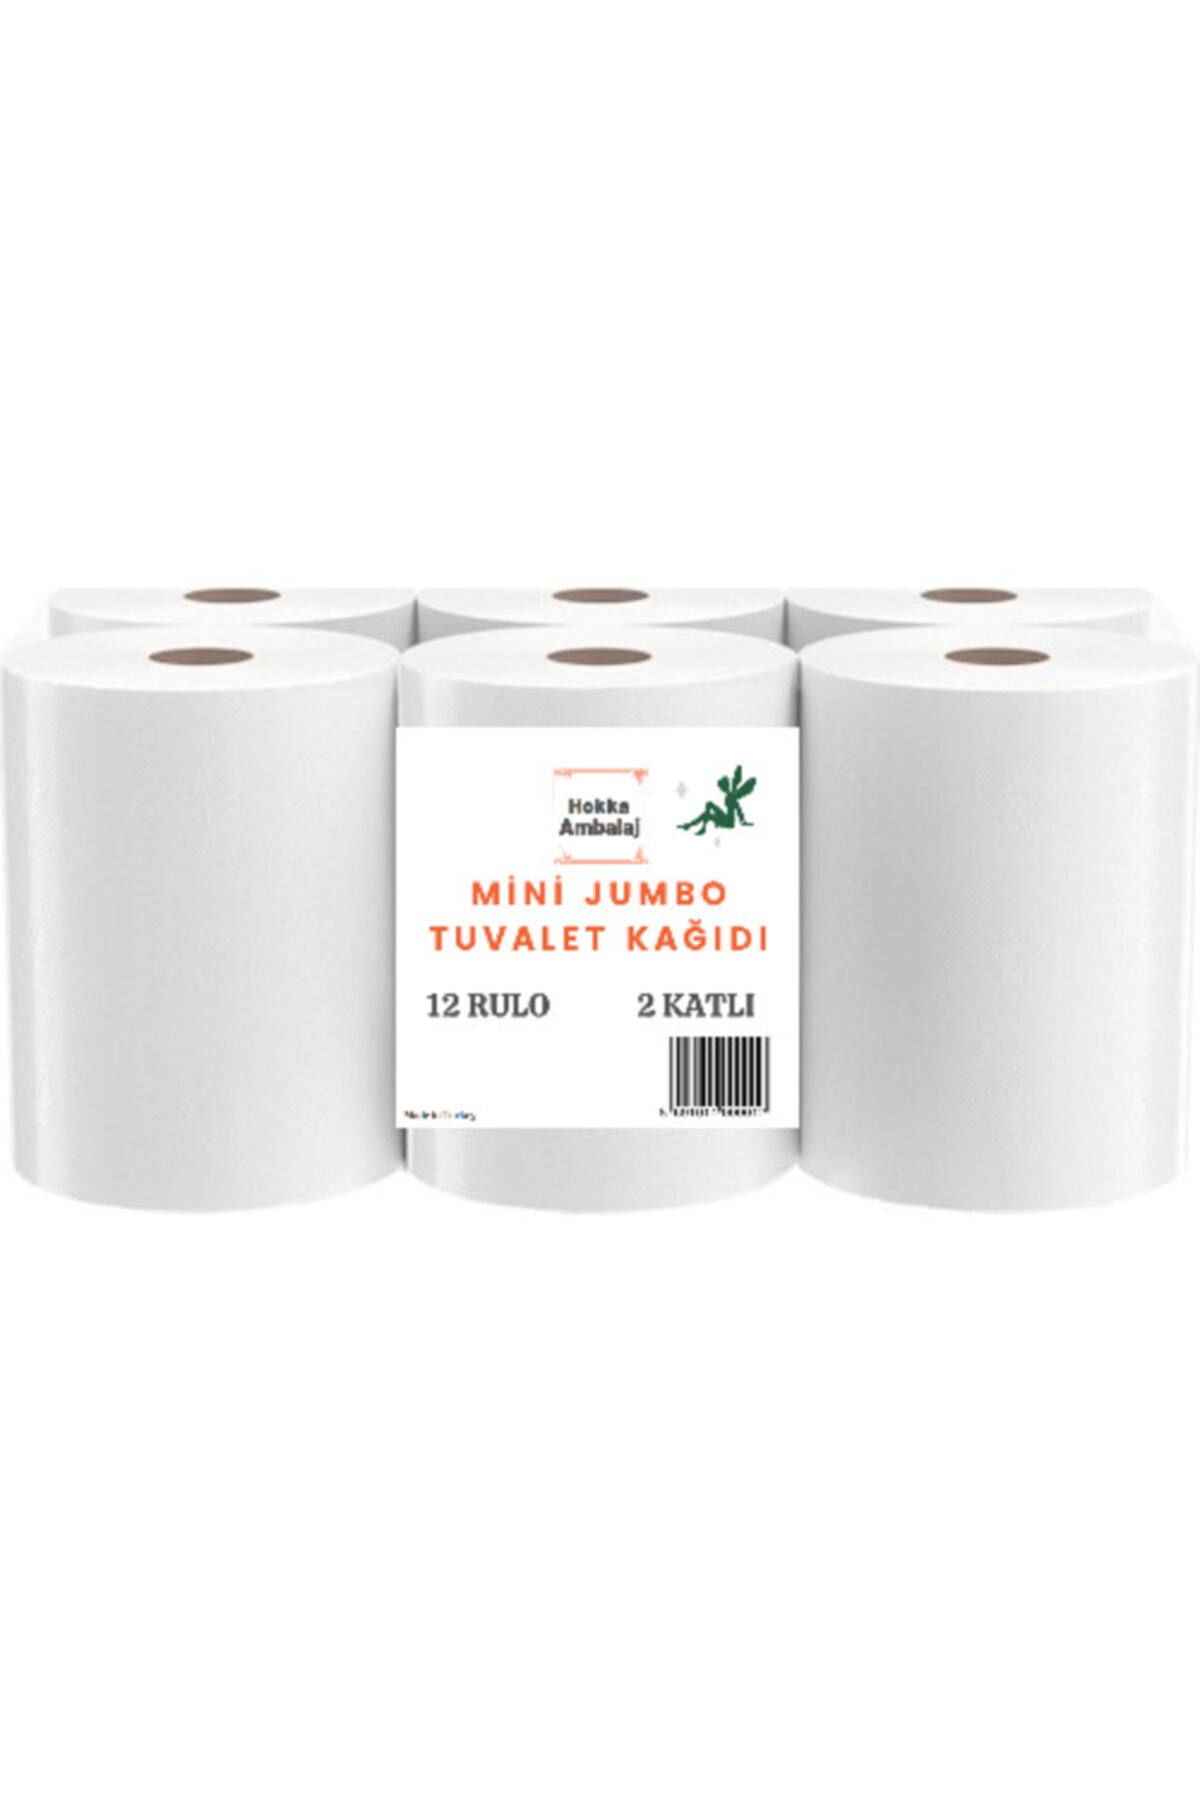 hokka 5 Koli Mini Jumbo Tuvalet Kağıdı 60 Rulo